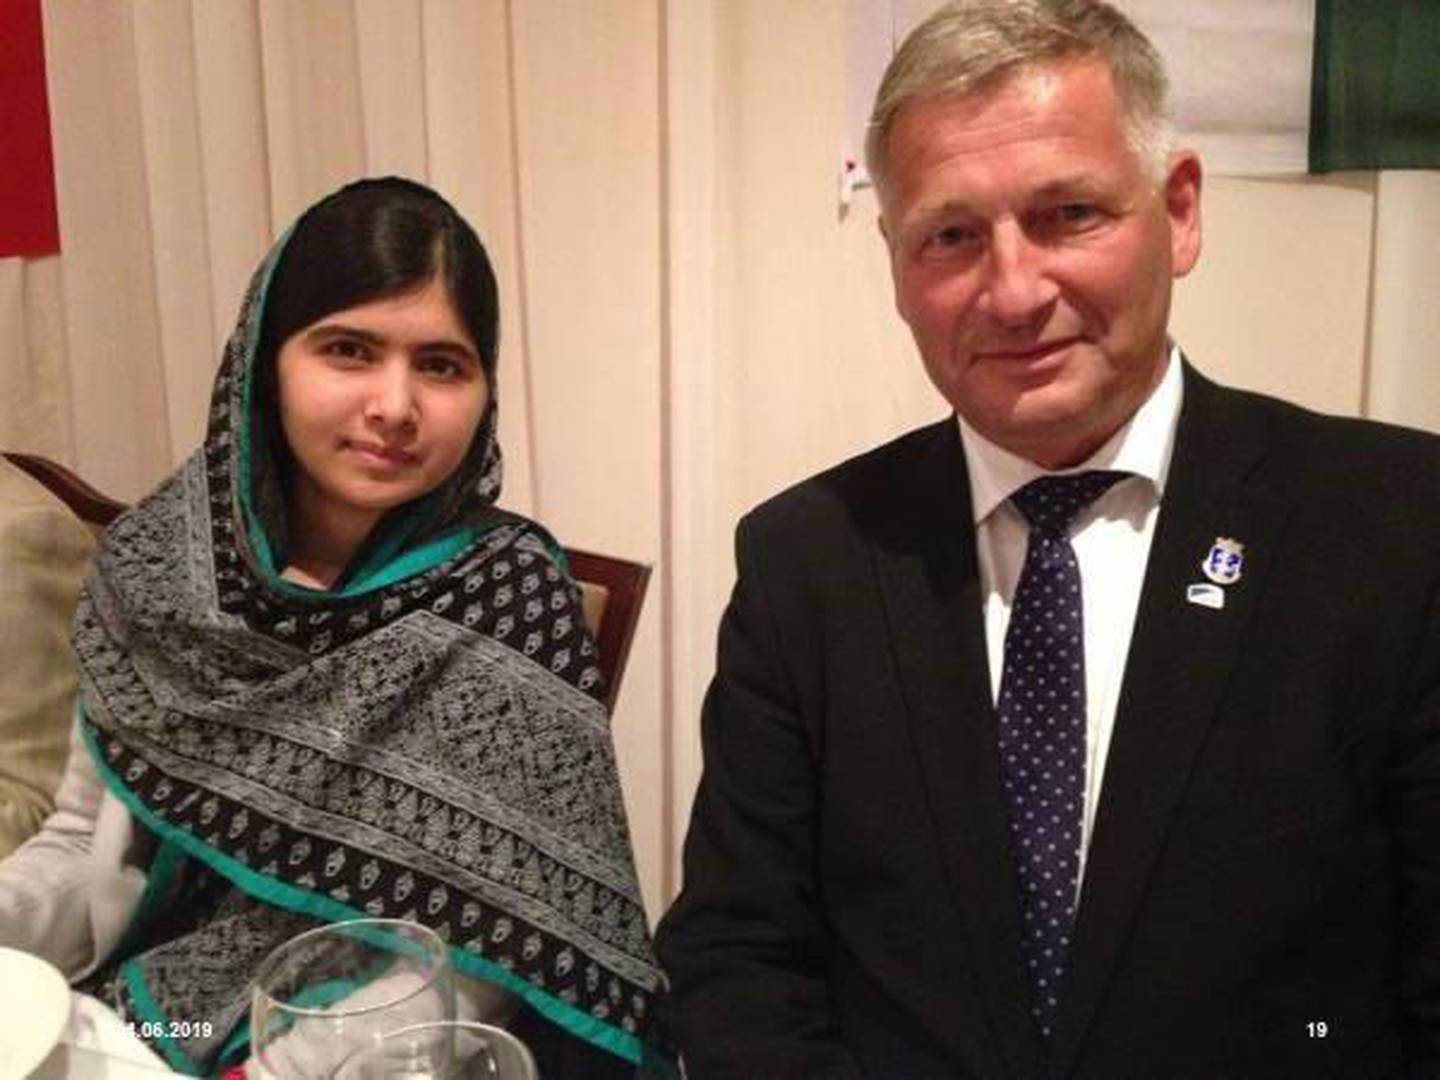 Ordfører Tore O. Hansen (H) har vært invitert alle tre gangene Nobels fredsprisvinner Malala har vært i Norge.  FOTO: PRIVAT